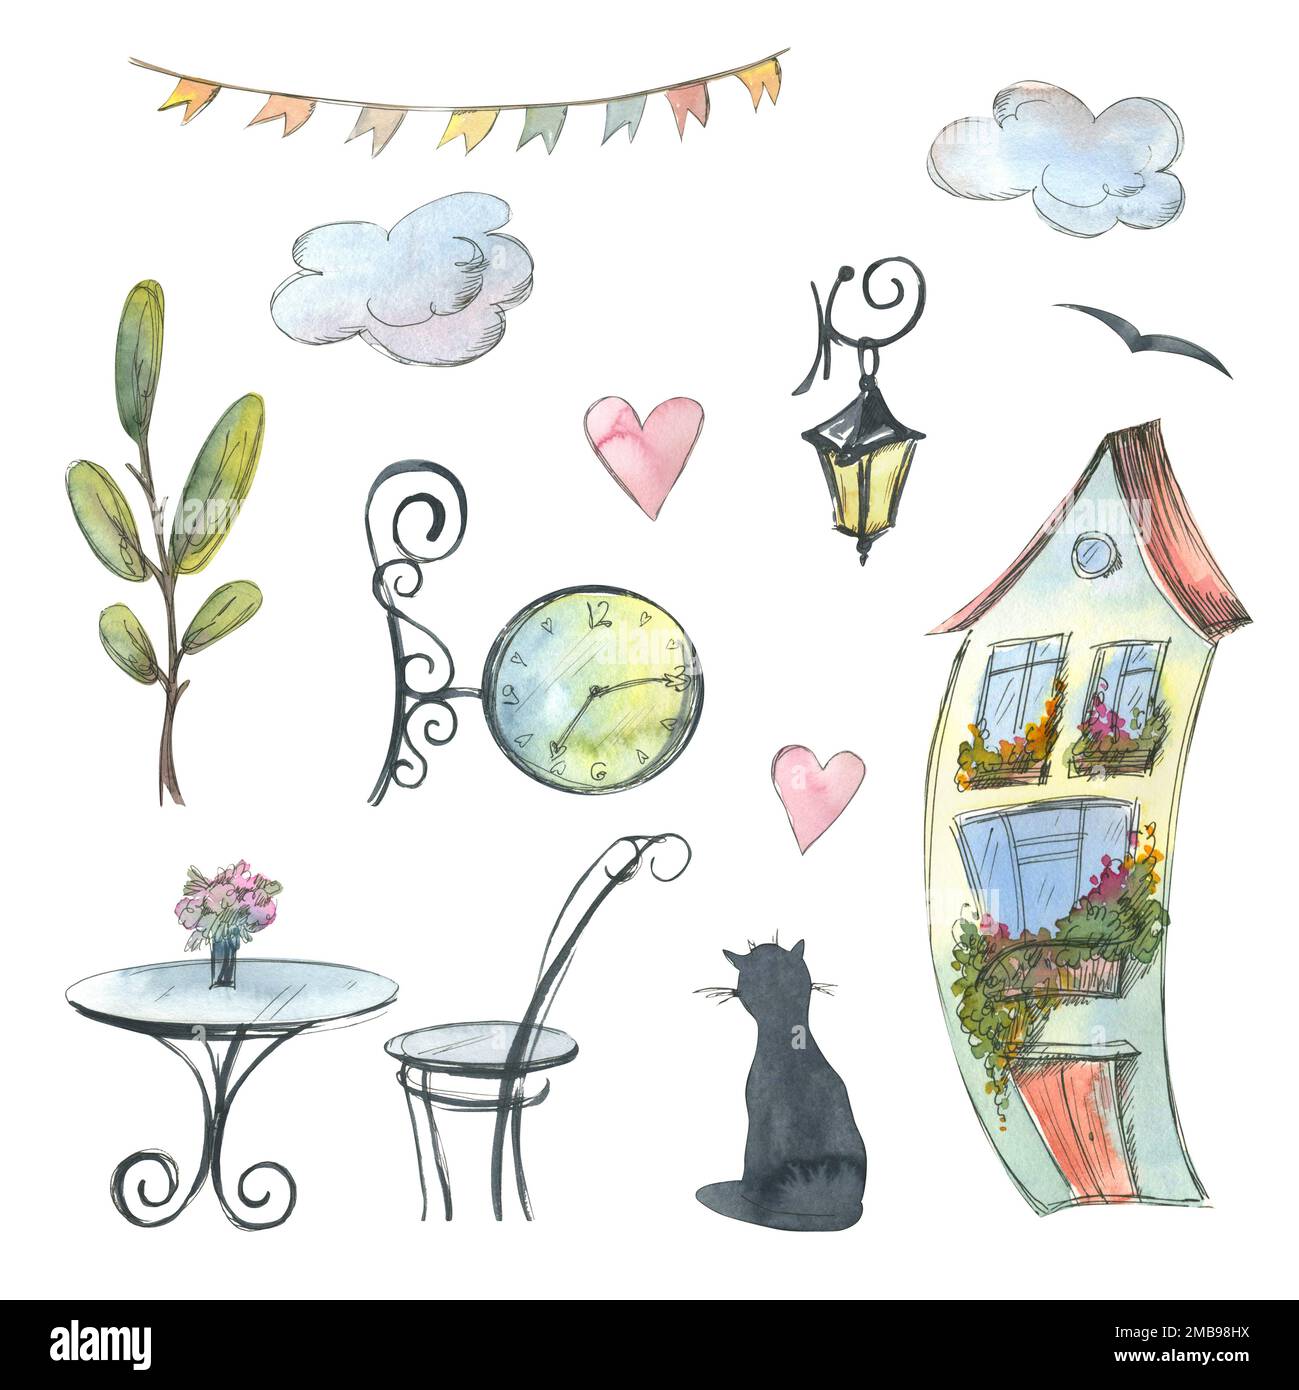 Une jolie maison avec une lanterne, une horloge, un chat, des nuages, des coeurs, un arbre, une table, une chaise, une guirlande de drapeaux. Illustration aquarelle. Un ensemble de la Banque D'Images